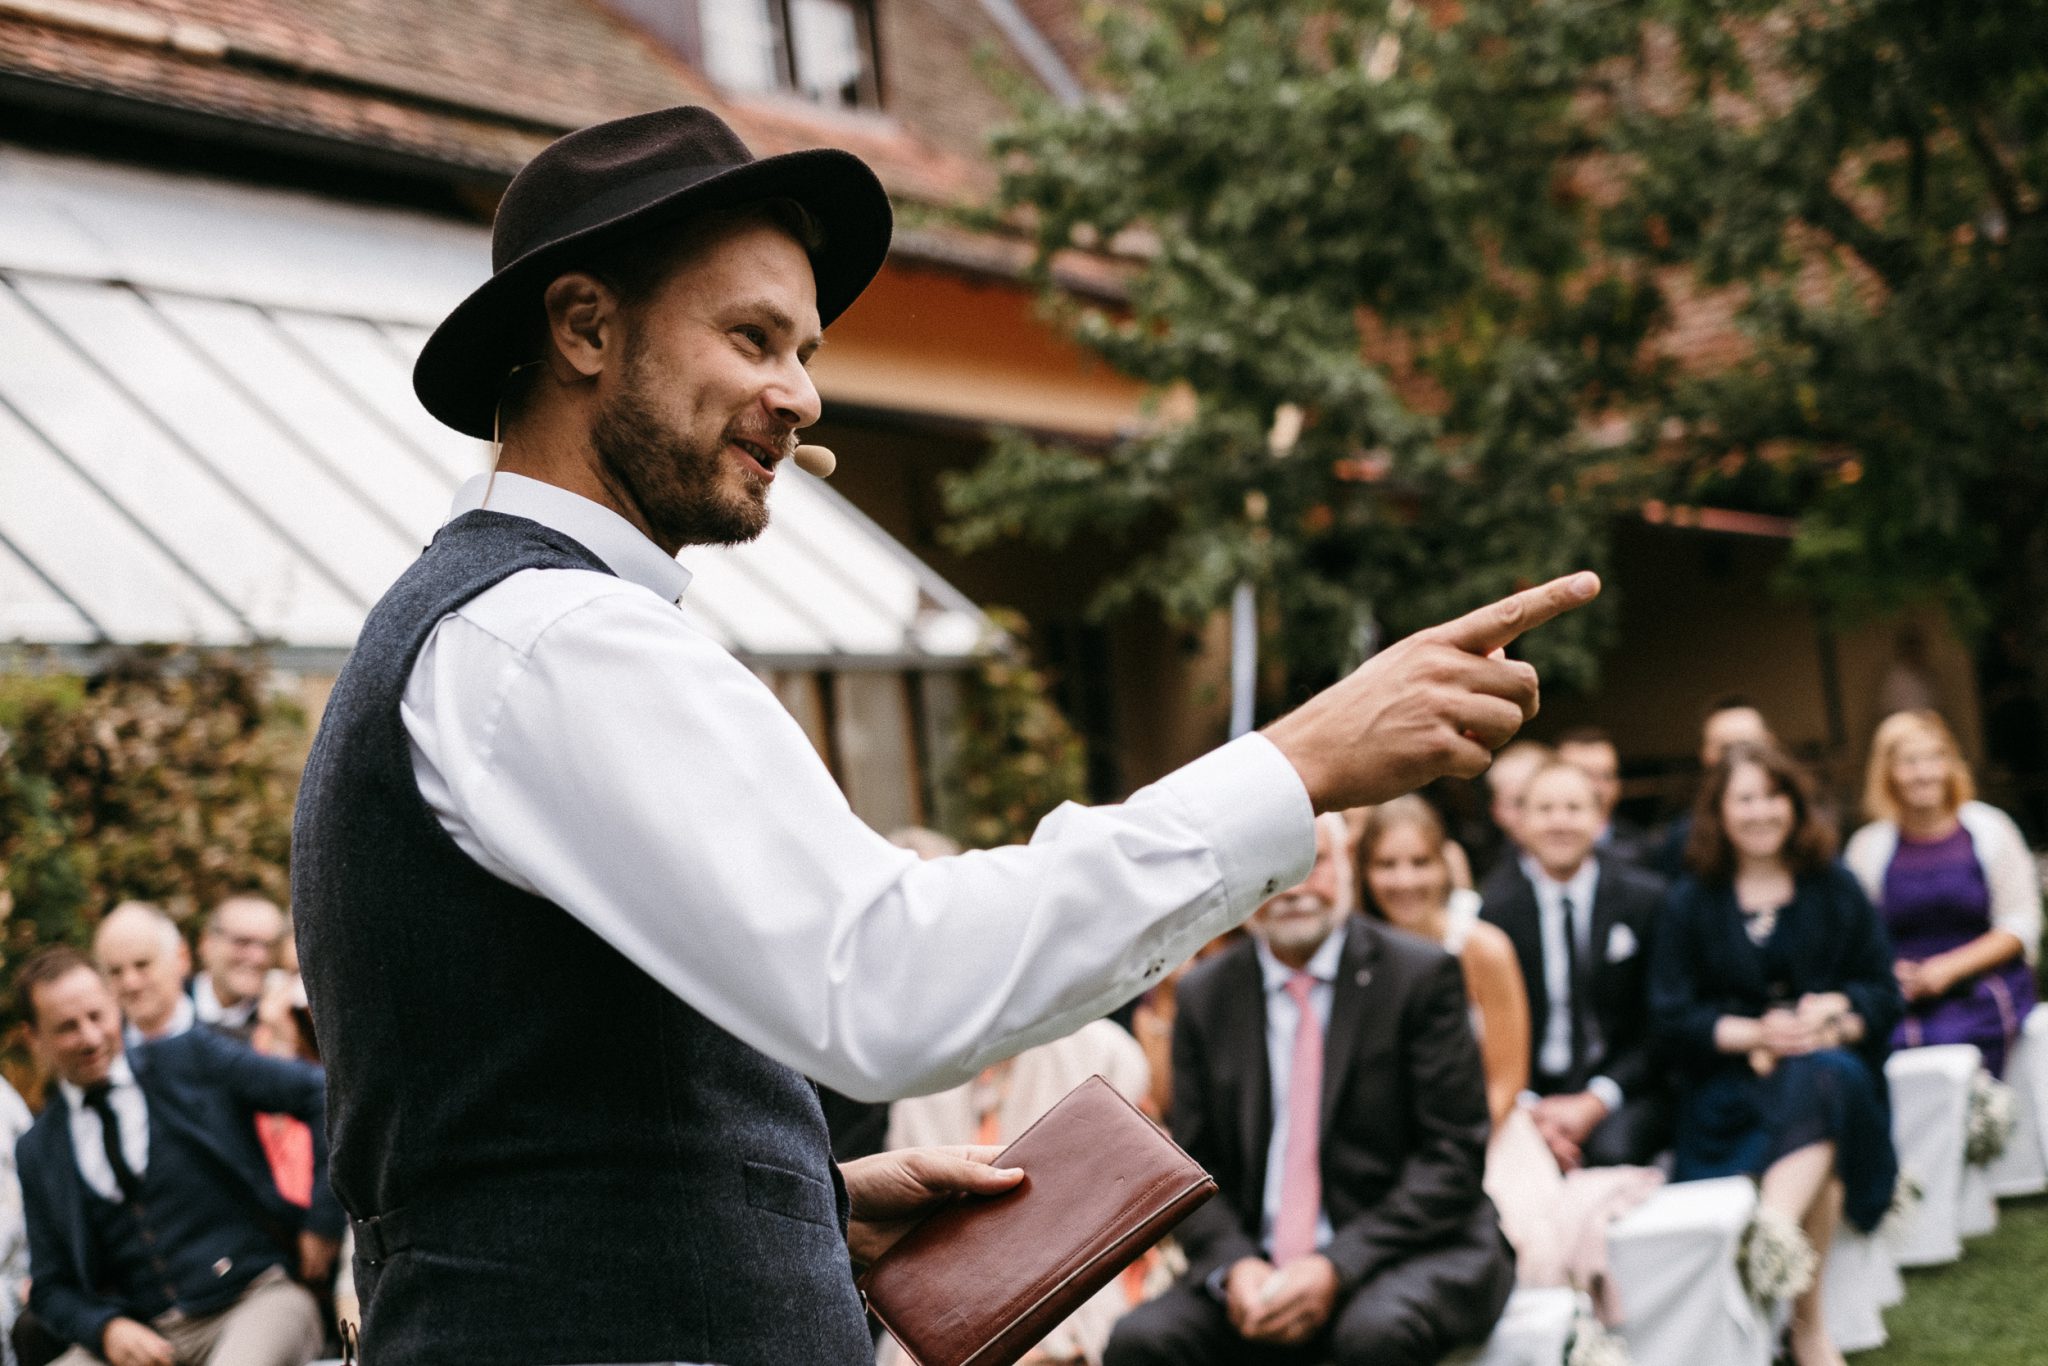 Johann-Jakob Wulf ist einer der besten Hochzeitsredner Deutschlands